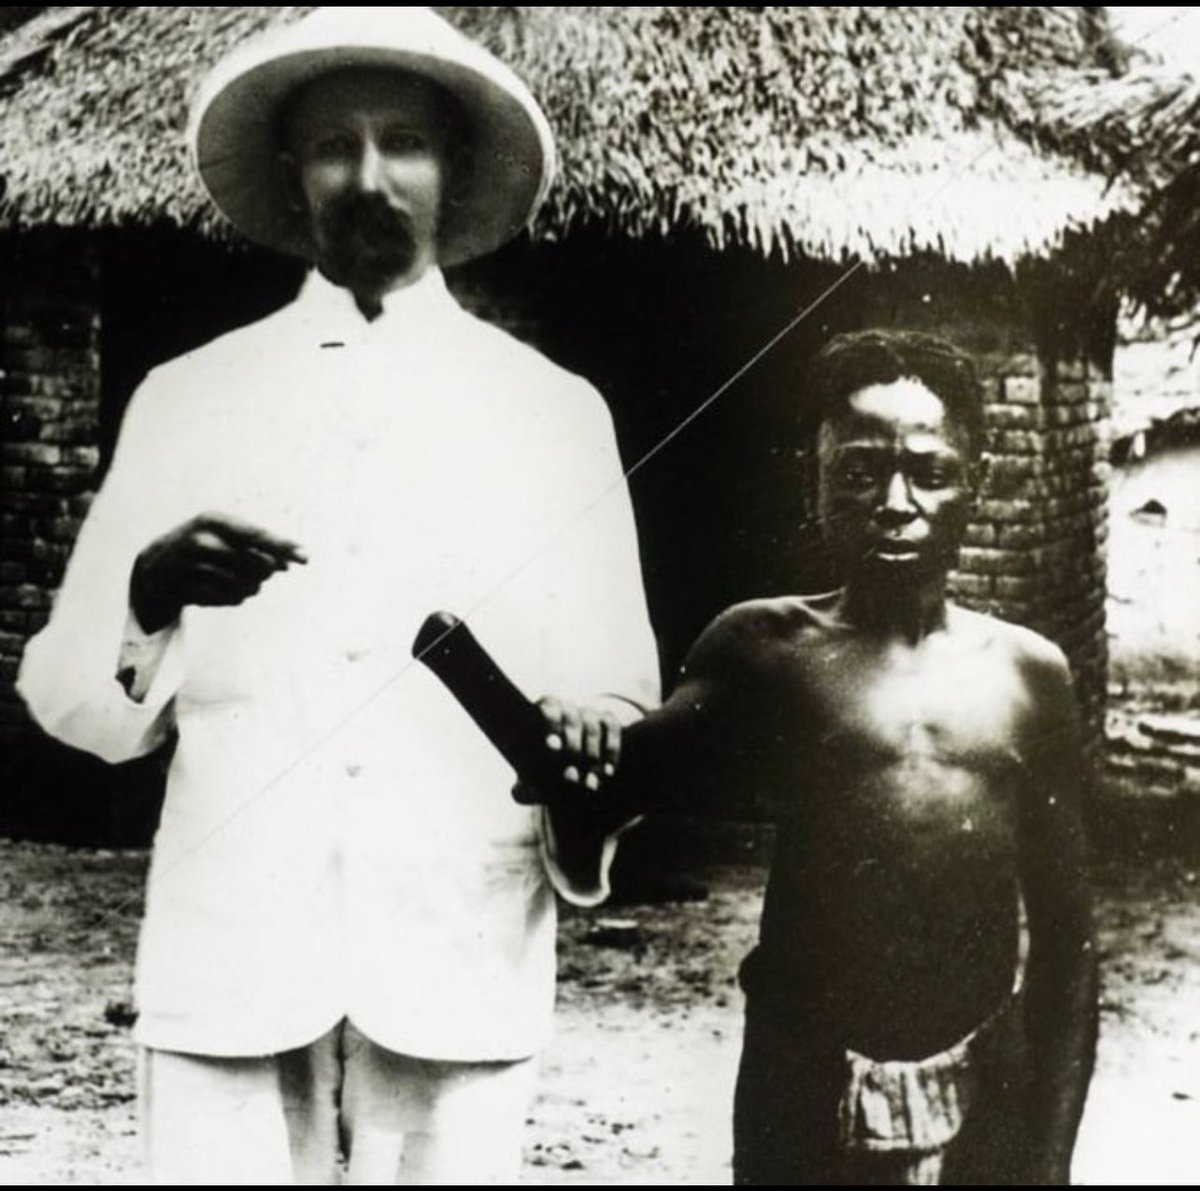 📌“19. yüzyılın sonları ve 20. yüzyılın başlarında, Belçika Kralı II. Leopold, Kongo Özgür Devleti'ni kişisel kolonisi olarak yönetiyordu. Onun sömürge rejimi altında Kongo halkı çok acı çekti. Kral Leopold'un temel amacı, özellikle kauçuk üretimi yoluyla Kongo'dan mümkün olduğu…